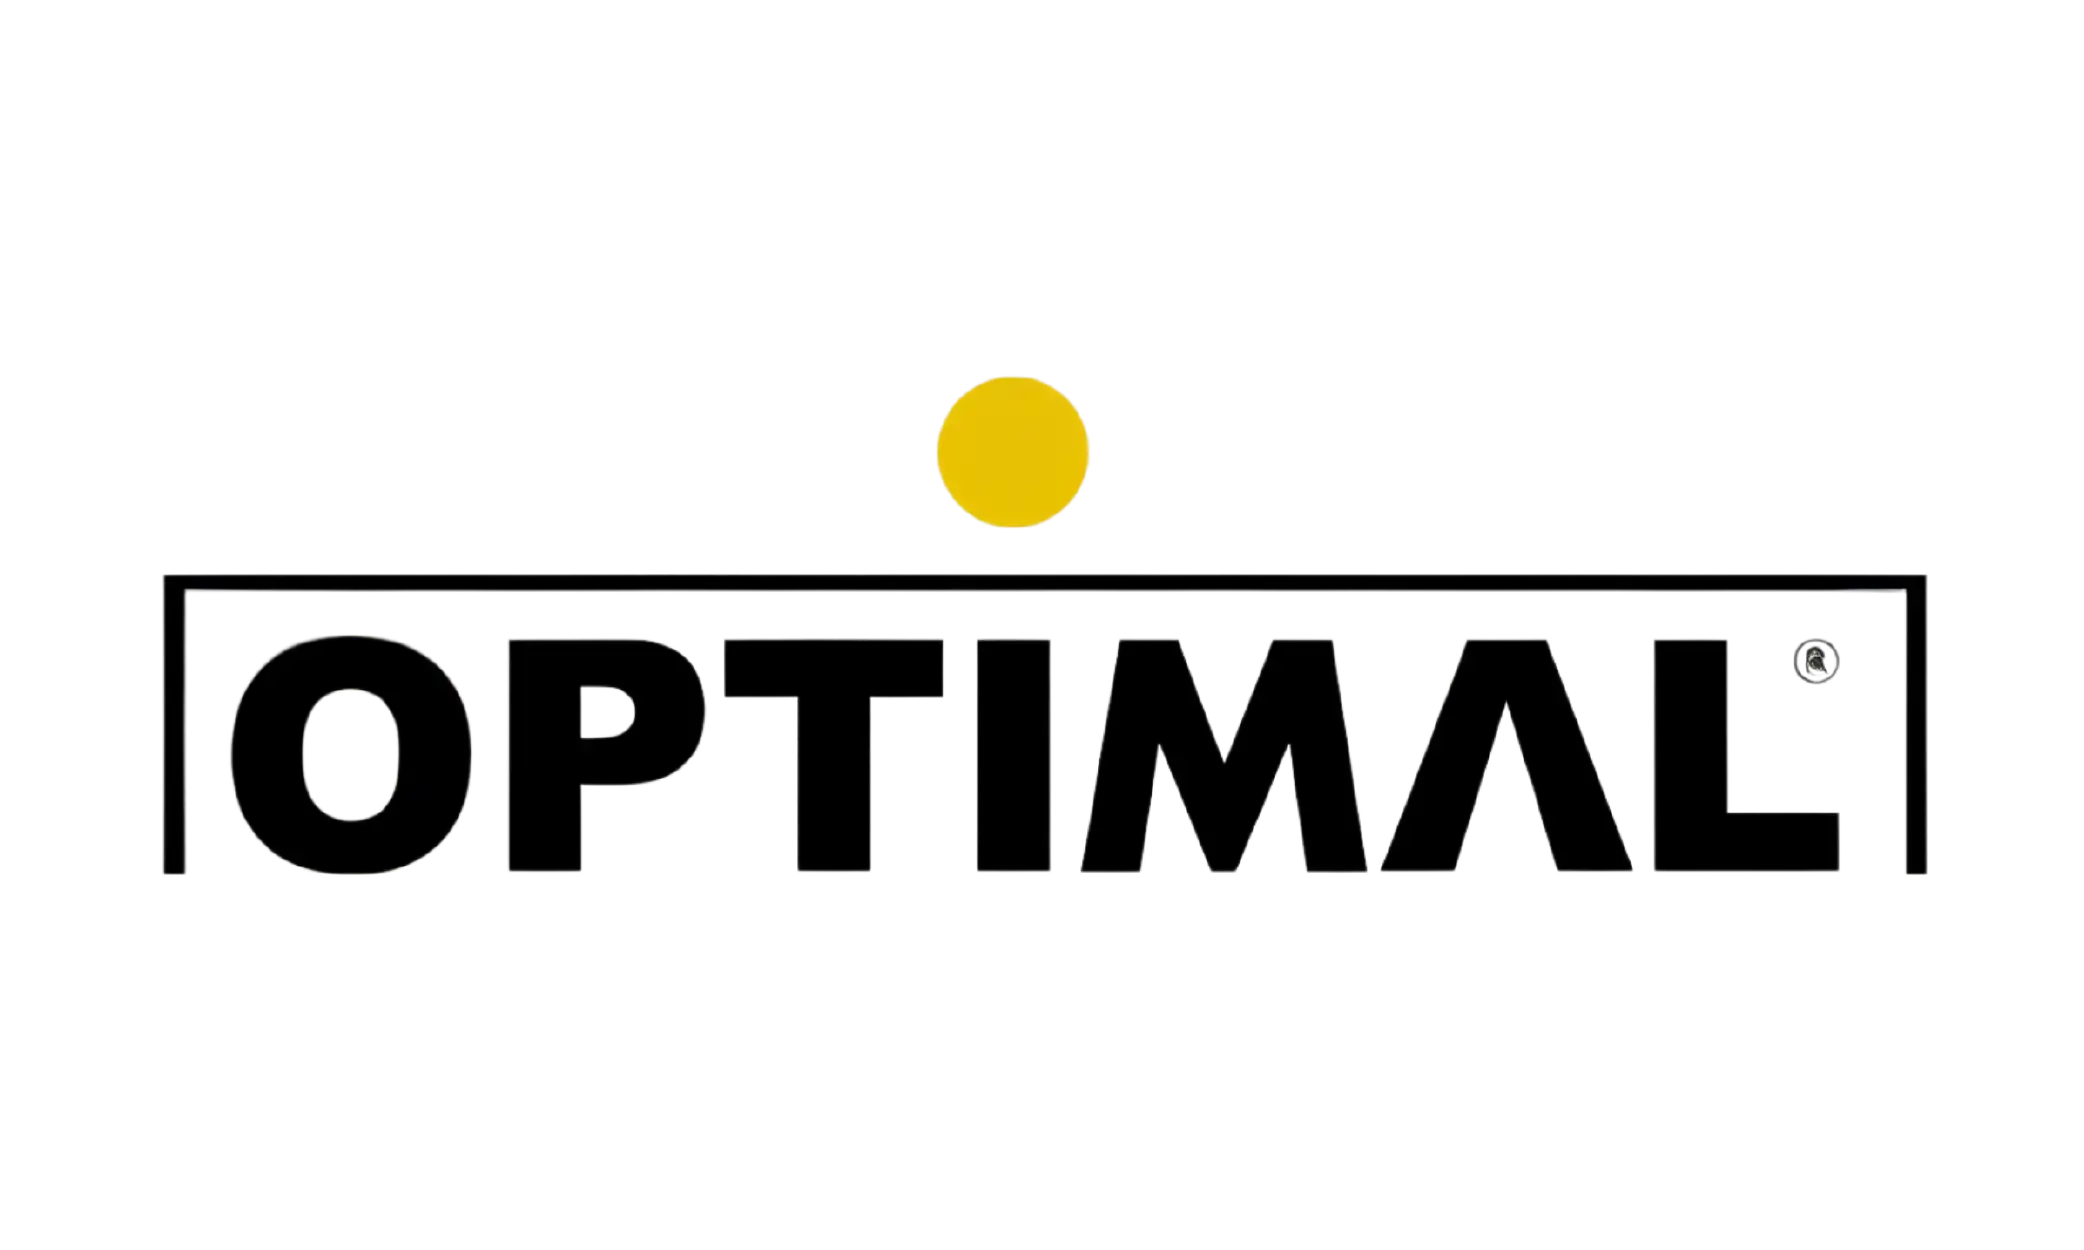 optimal logo